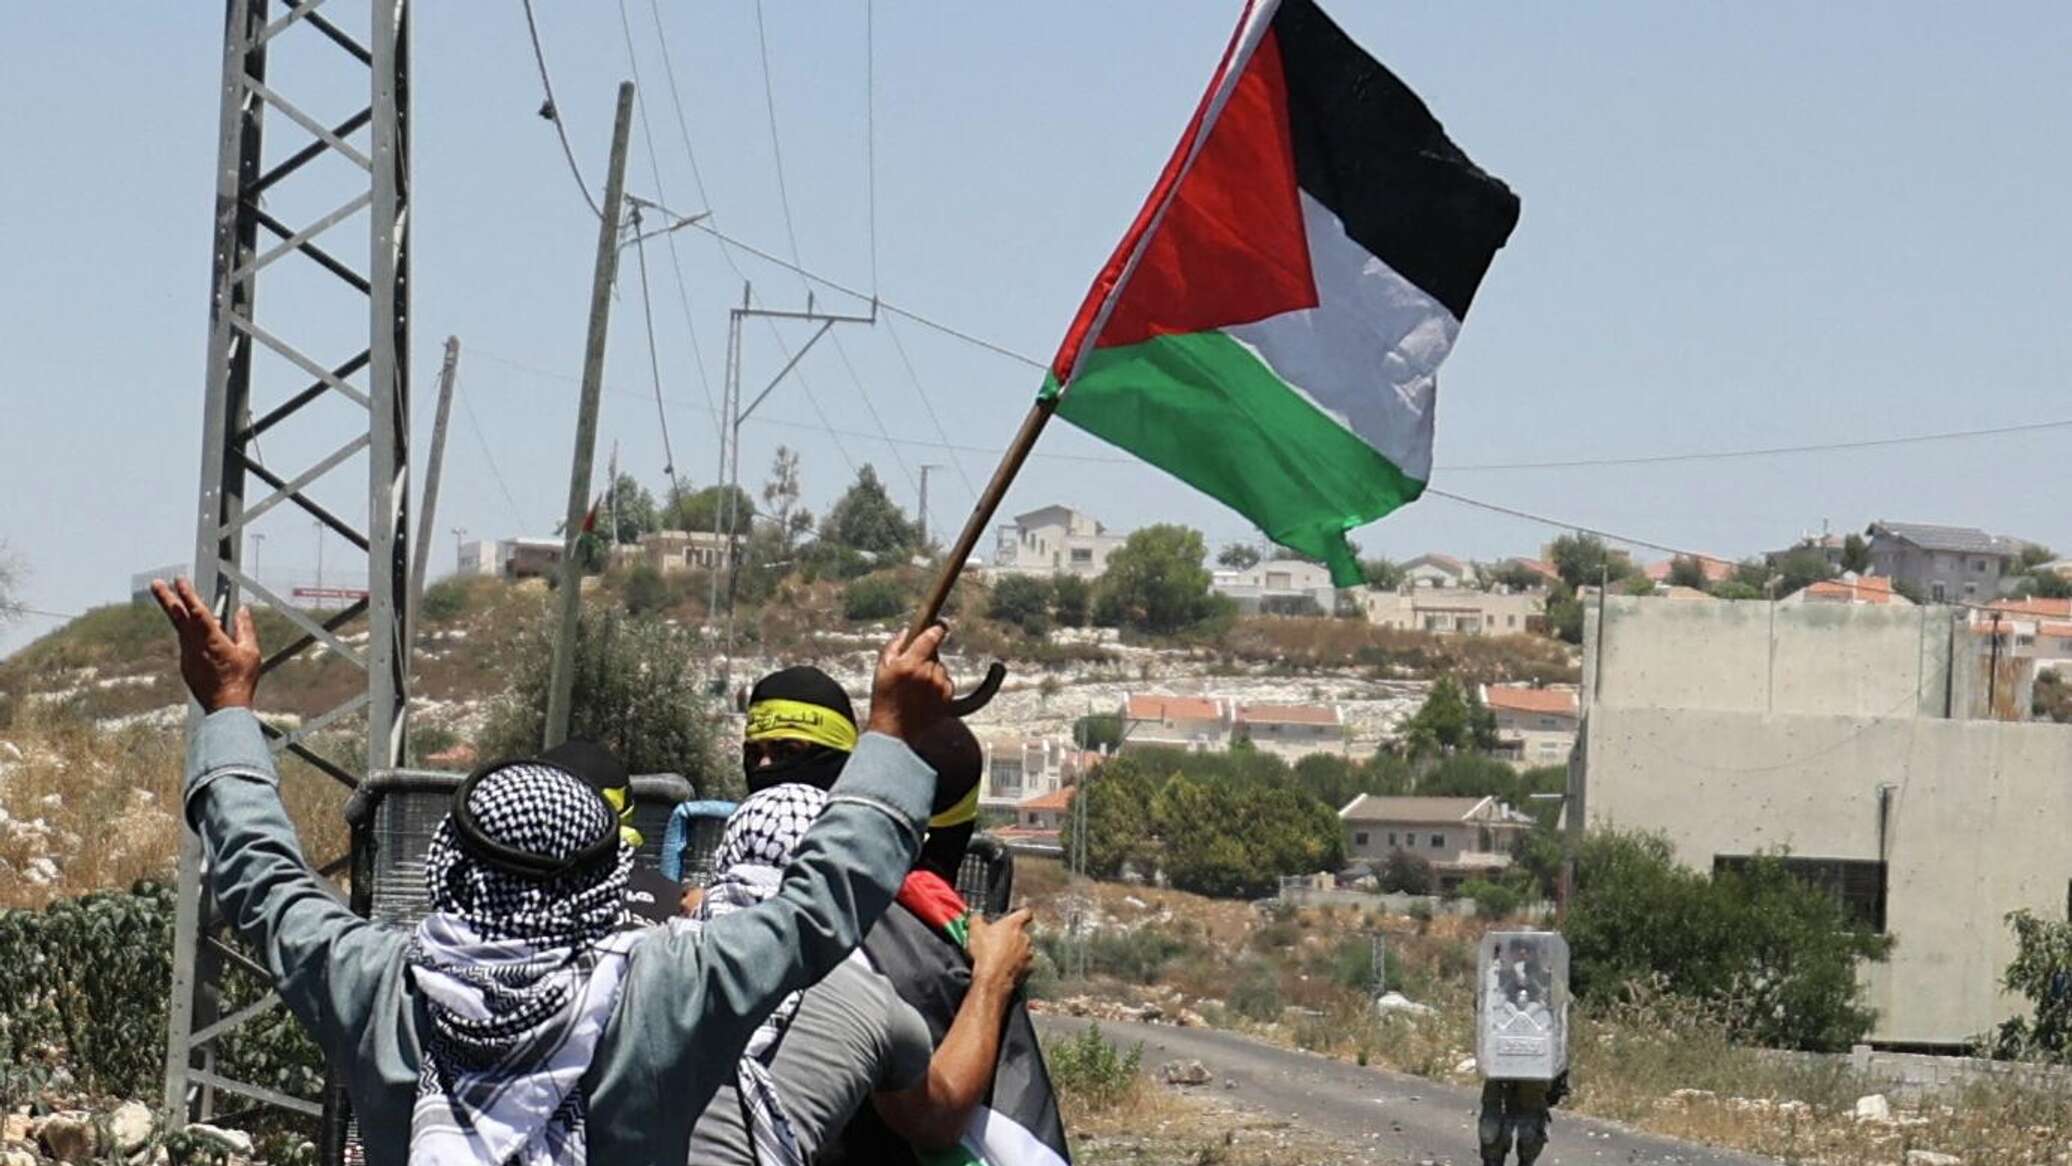 وزير إسرائيلي: الاعتراف الأحادي الجانب بالدولة الفلسطينية سيؤثر على أمننا القومي